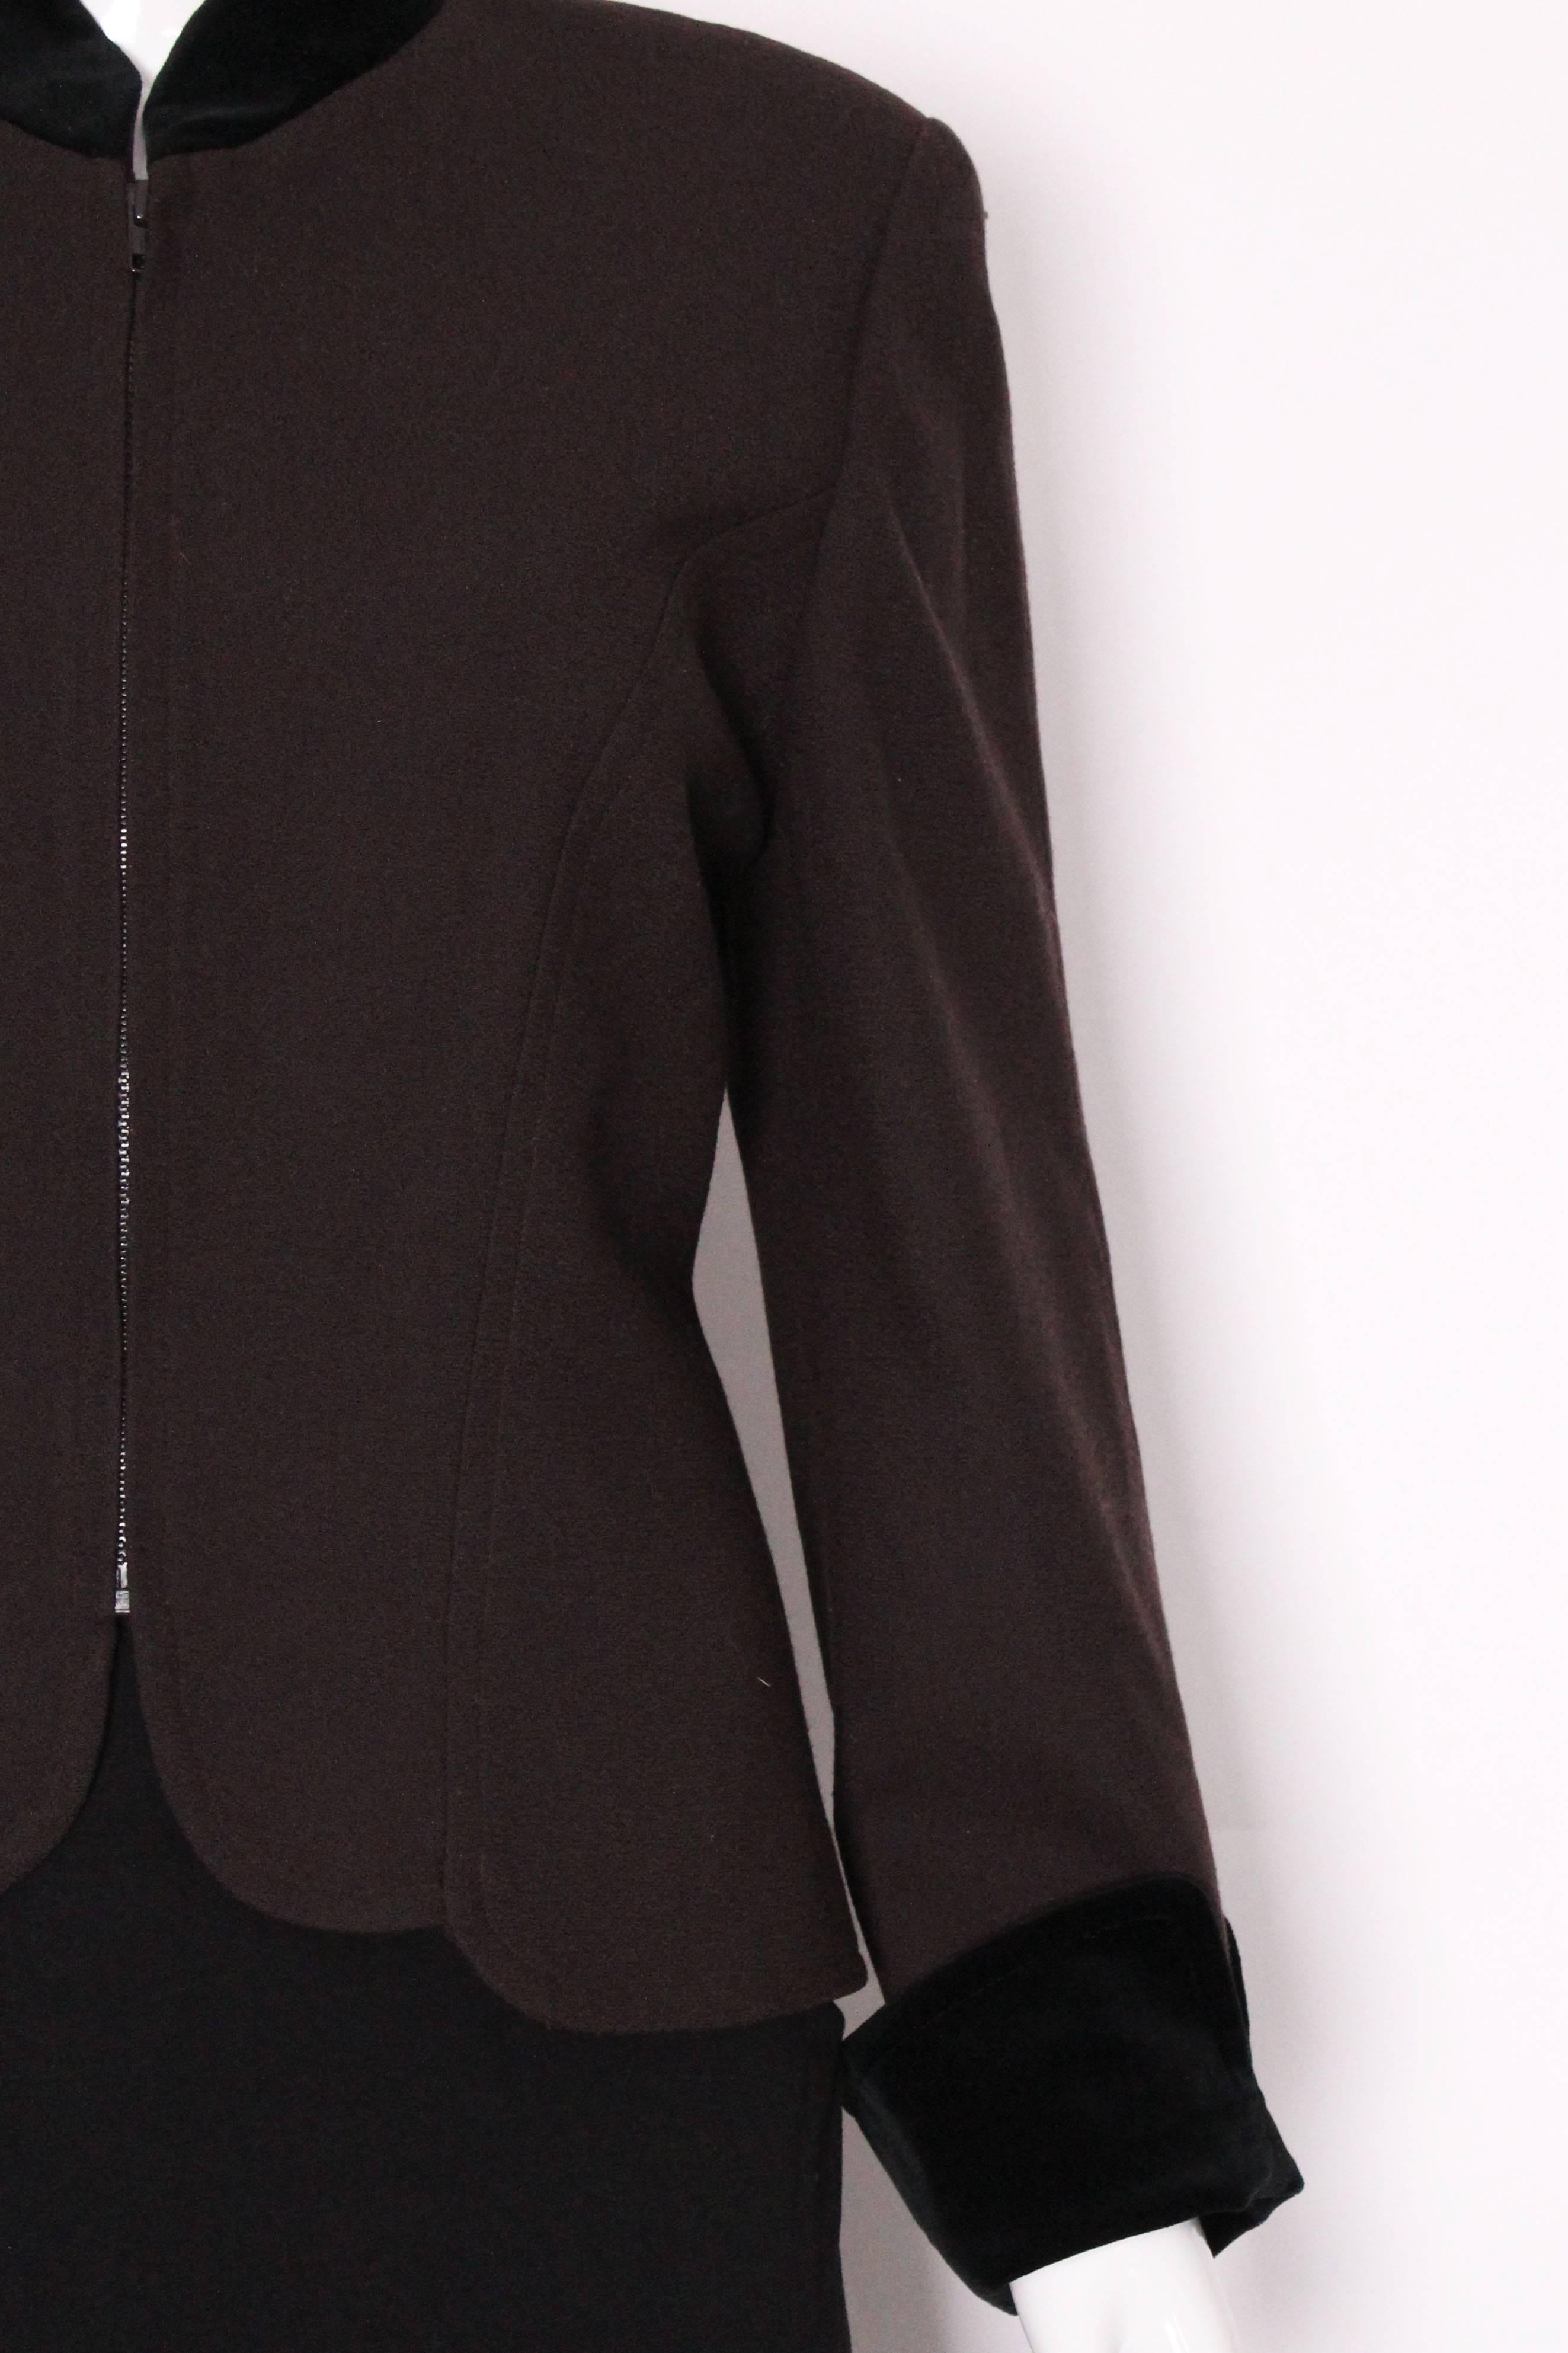 Women's Christian Dior Zip up Jacket